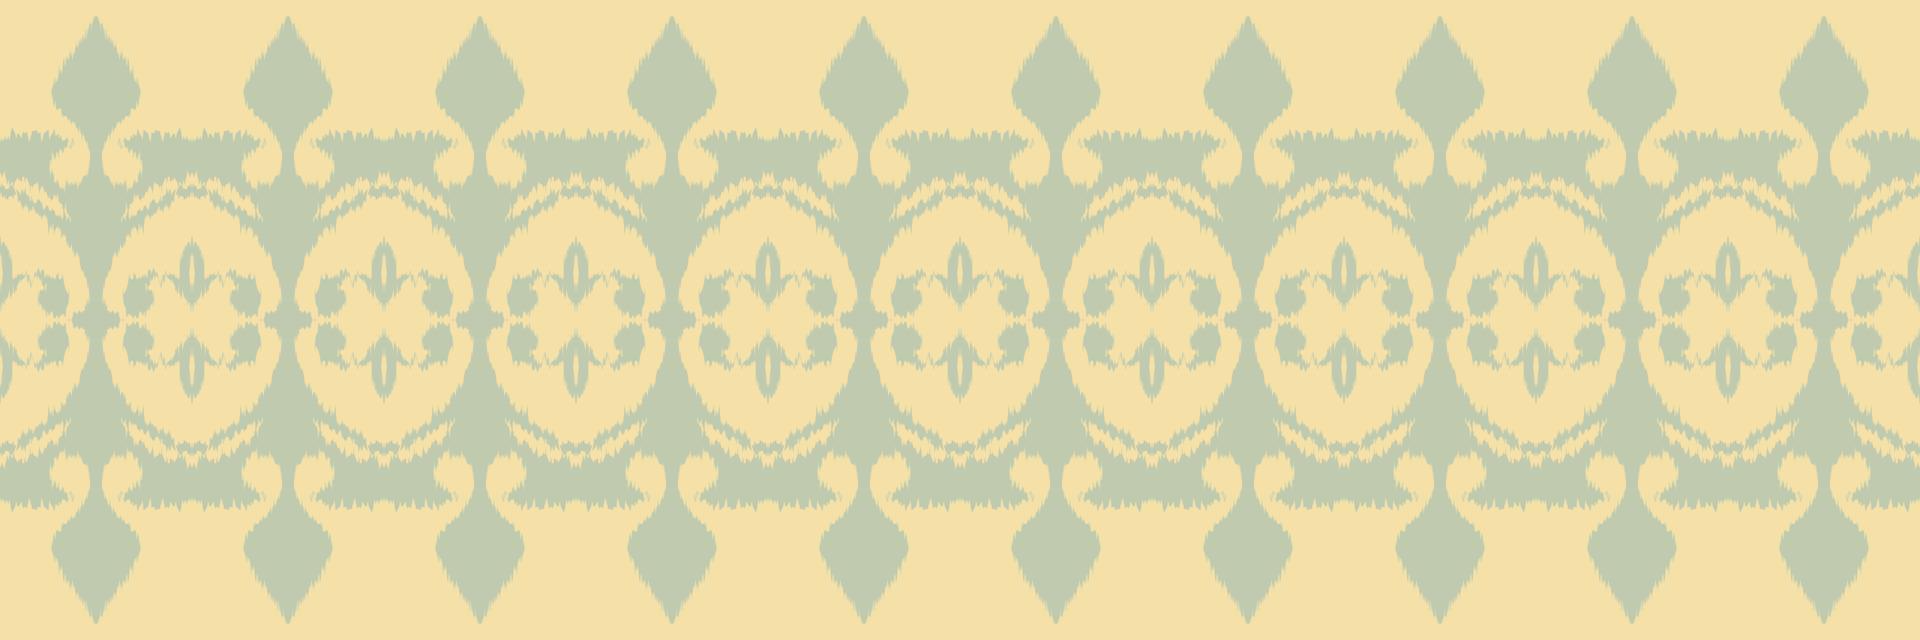 Batik-Textil-Ikat-Blume, nahtloses Muster, digitales Vektordesign für den Druck, Saree, Kurti, Borneo, Stoff, Grenze, Pinsel, Symbole, Muster, stilvoll vektor